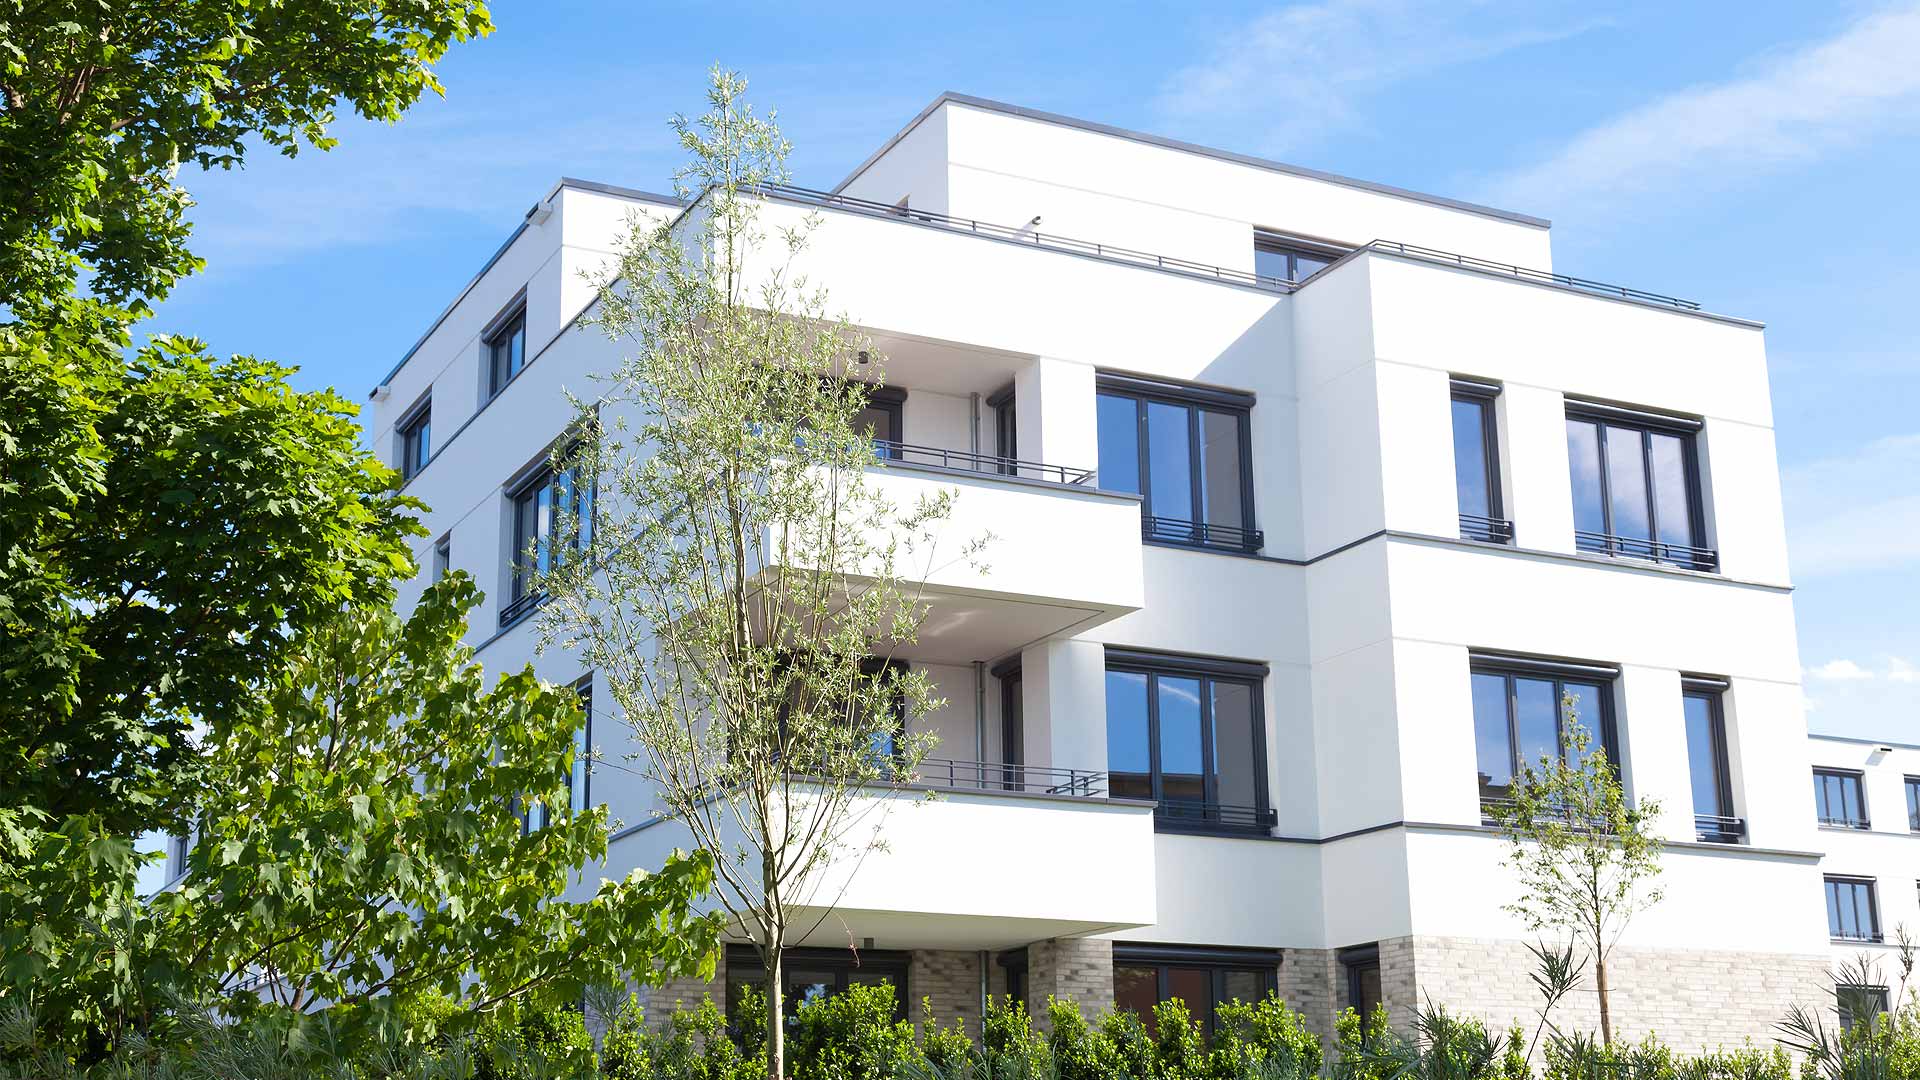 EWA-Wohnhaus-Apartment-Hausbau-Berlin-Brandenburg-Potsdam-Vorderansicht-weiße-Hauswand